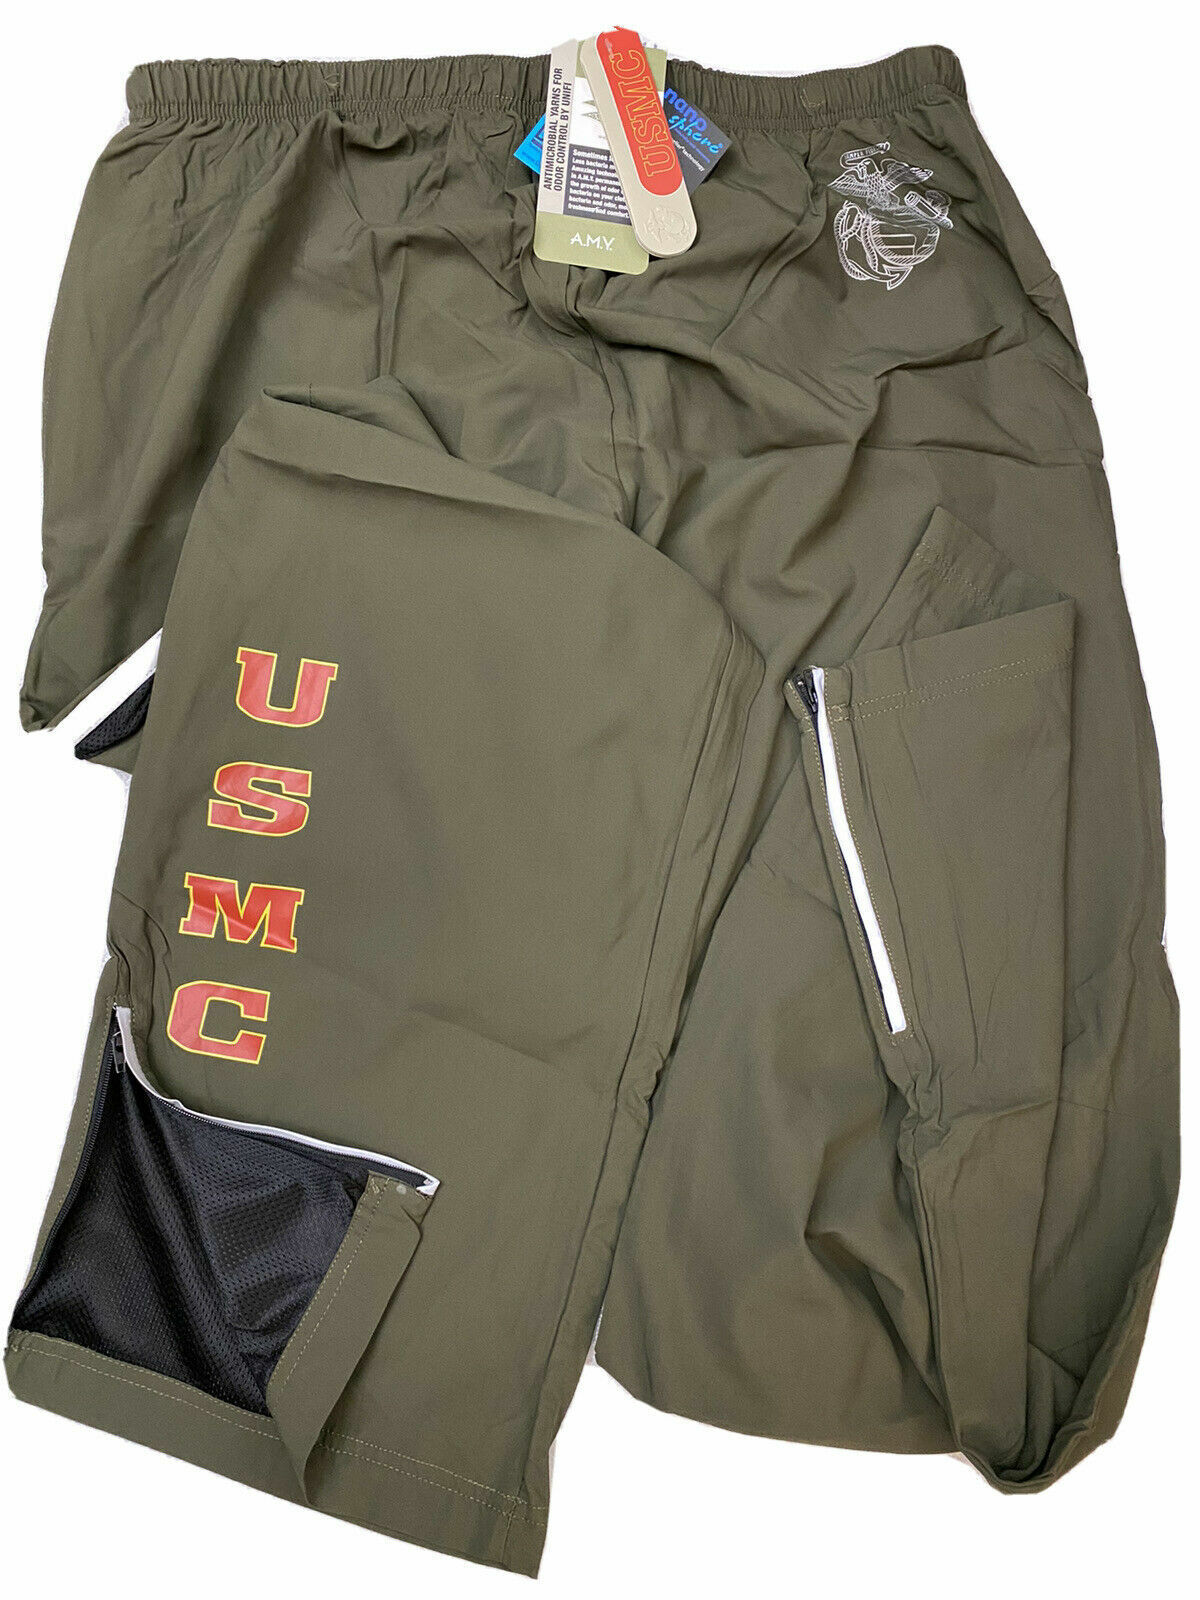 USMC New Balance PT / Athletic Pants U.S. Marines Size X-Large XLong - New